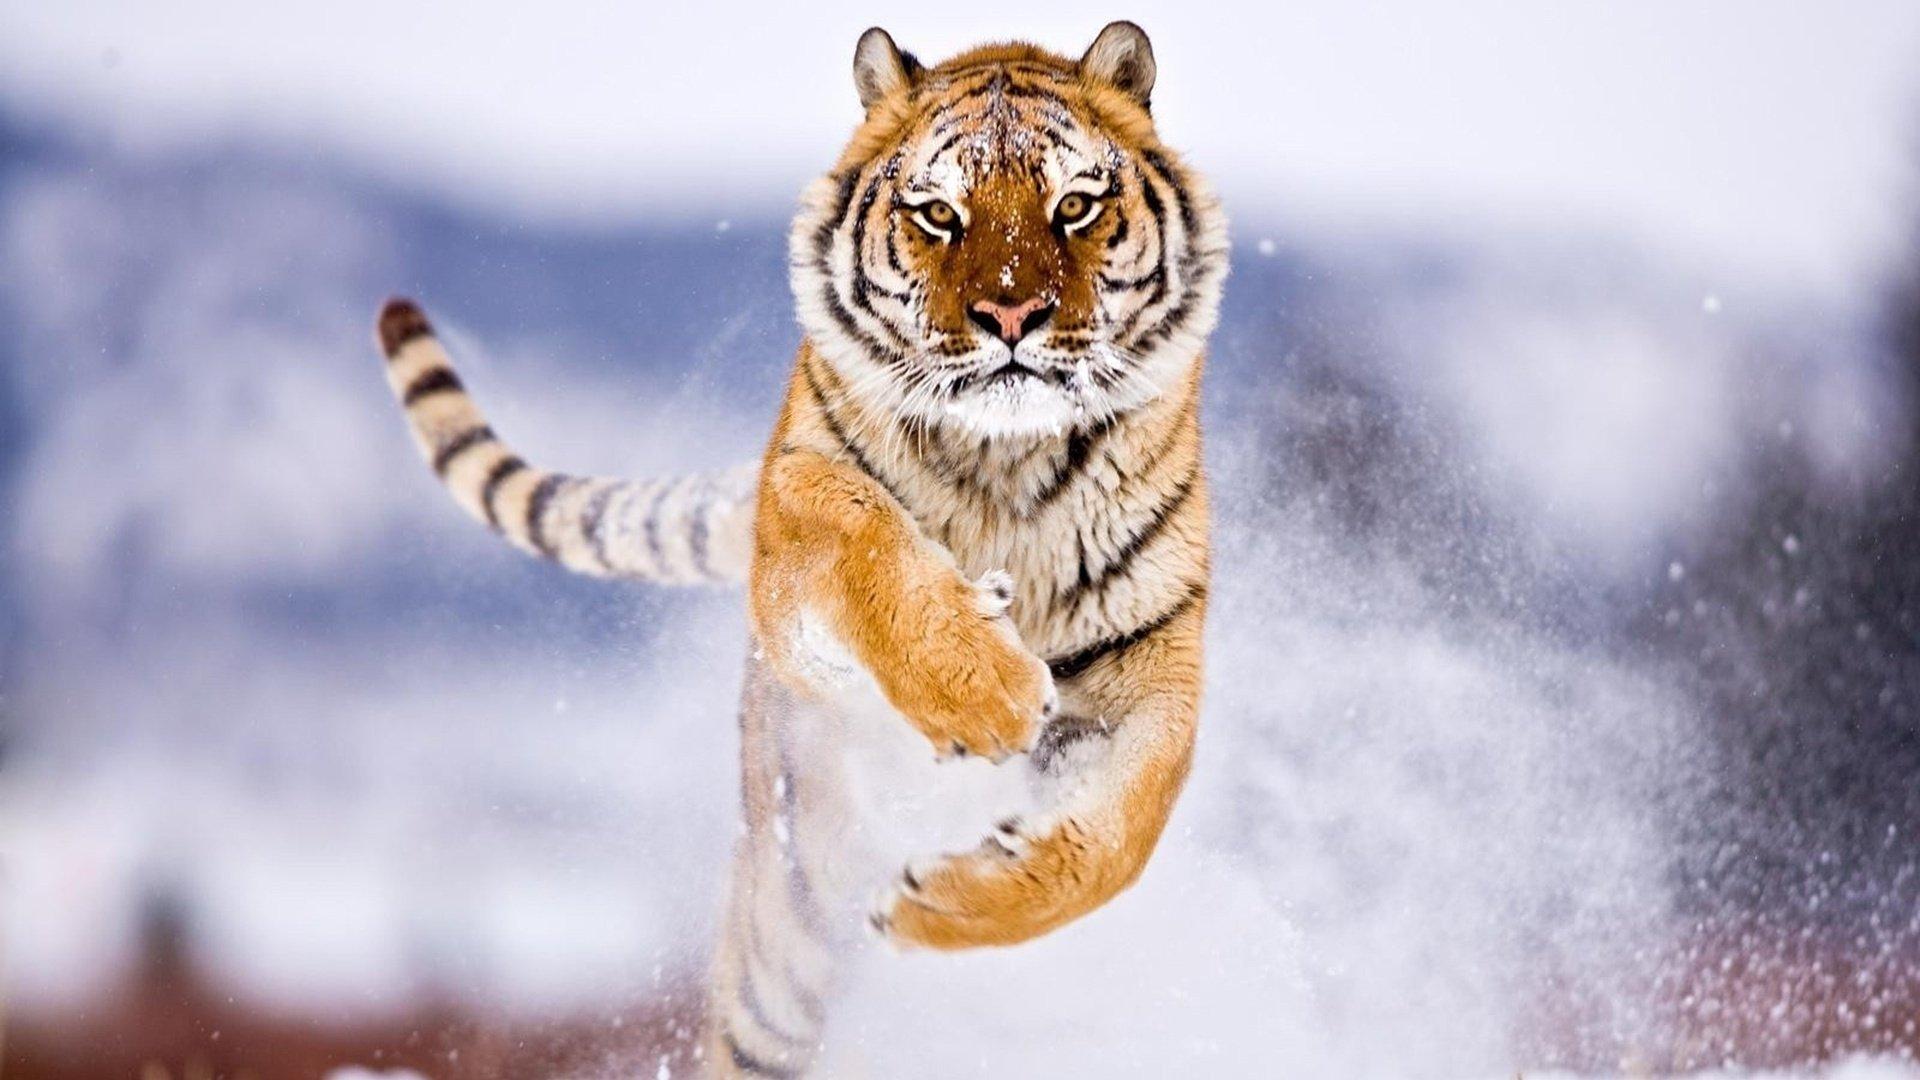 Картинки тигр, зима, кошка, хищник, снег, красиво, макро фото - обои  1680x1050, картинка №156405